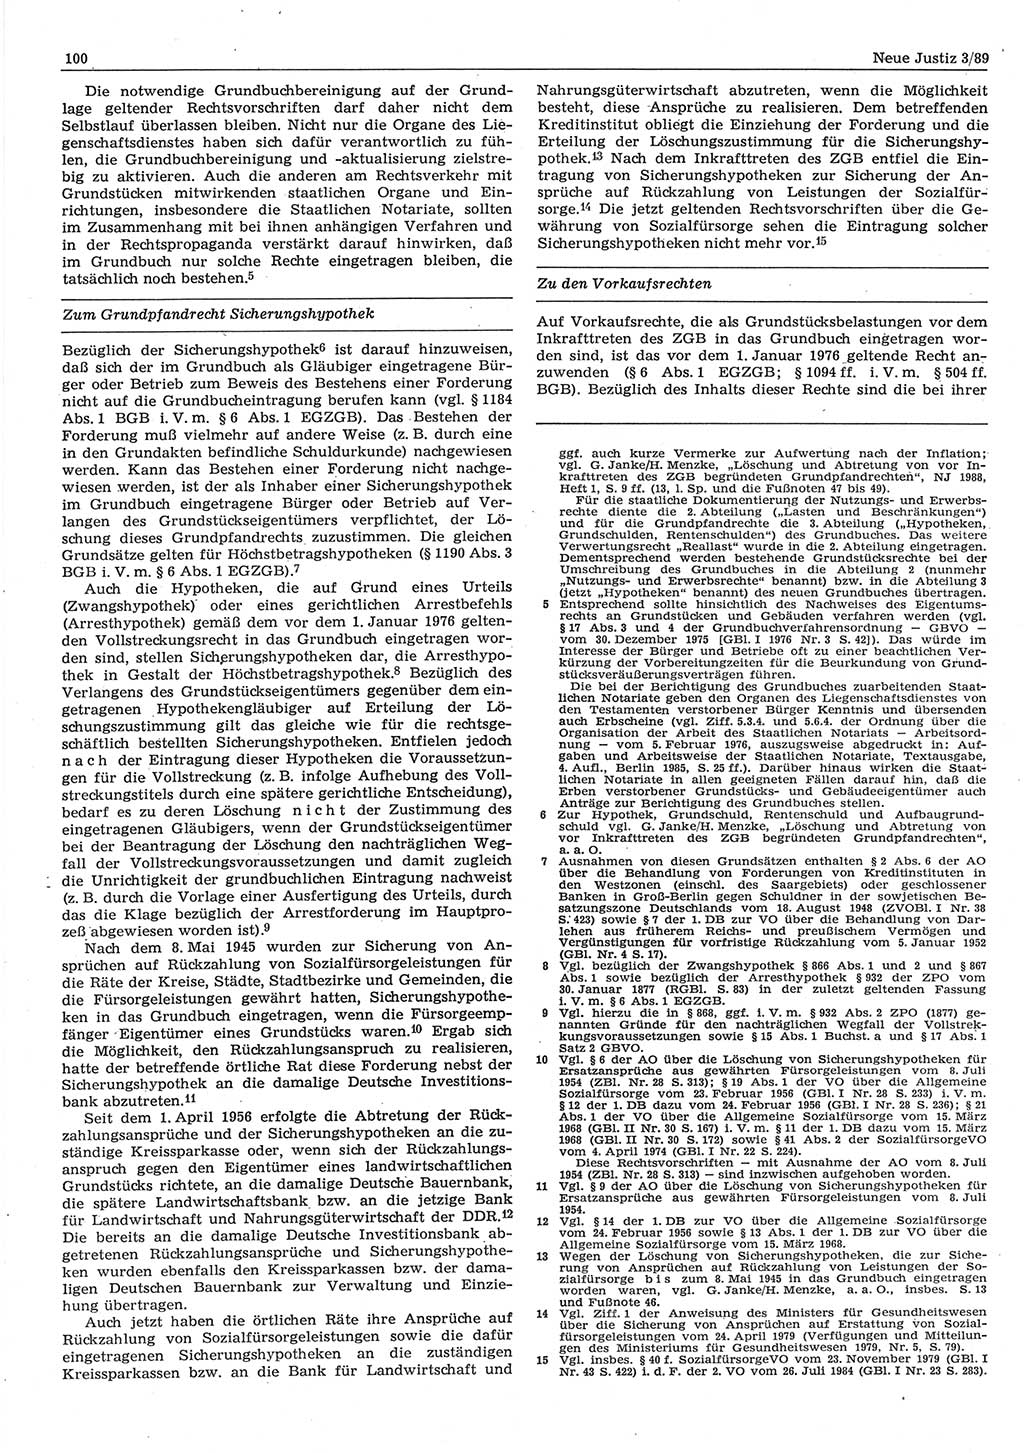 Neue Justiz (NJ), Zeitschrift für sozialistisches Recht und Gesetzlichkeit [Deutsche Demokratische Republik (DDR)], 43. Jahrgang 1989, Seite 100 (NJ DDR 1989, S. 100)